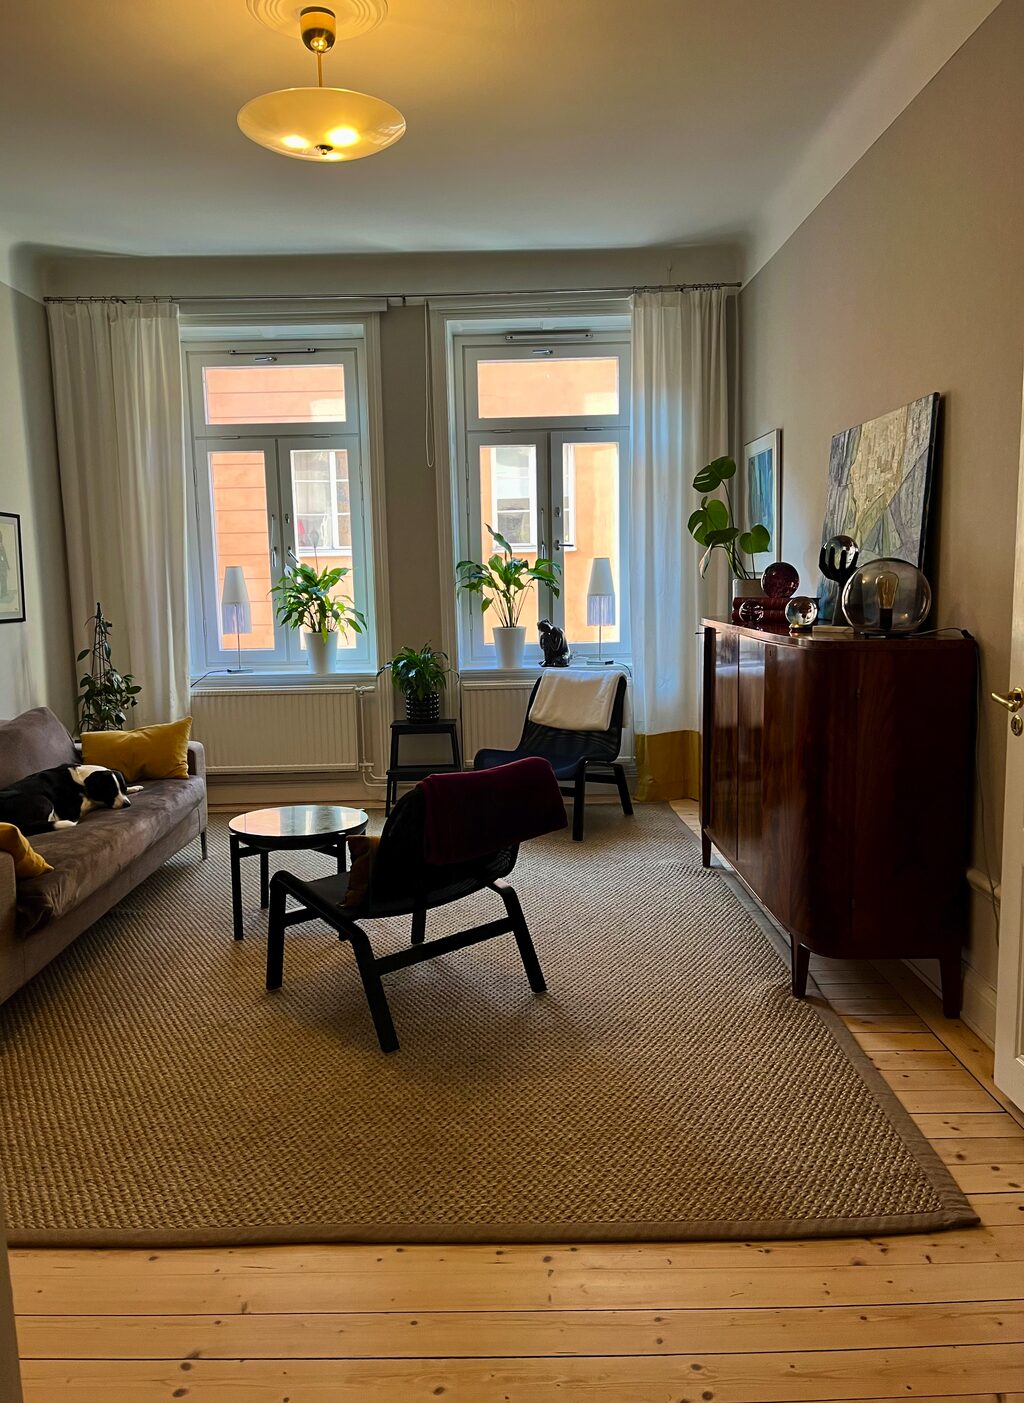 Lägenhetsbyte - Brännkyrkagatan 47, 118 22 Stockholm